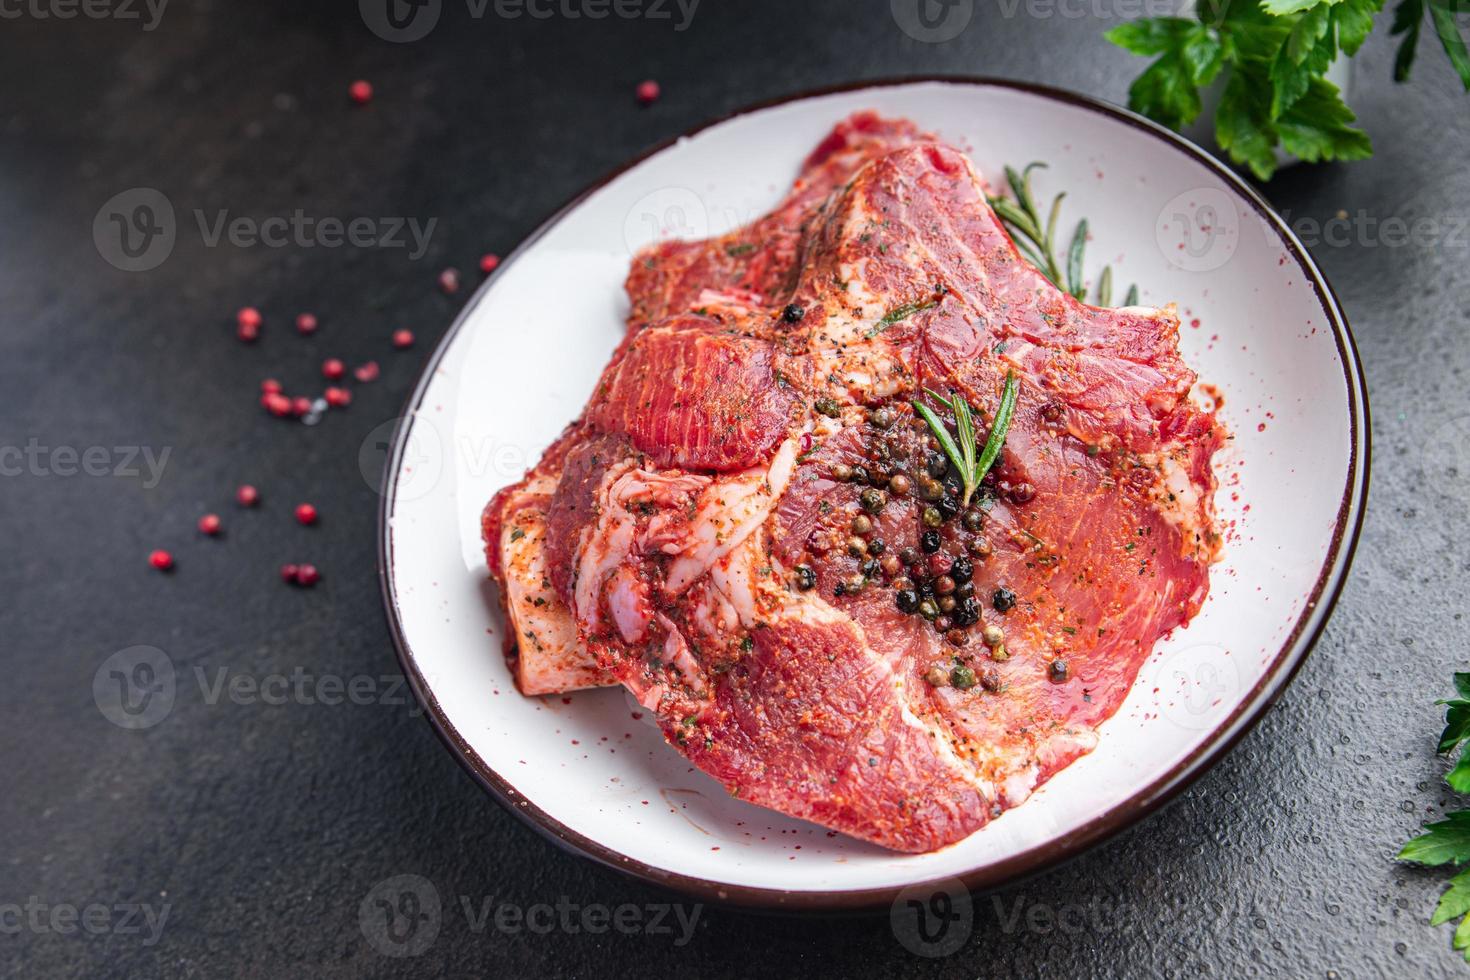 Rohes Fleisch Steak Schweinefleisch frisches Rindfleisch Essen Snack auf dem Tisch kopieren foto